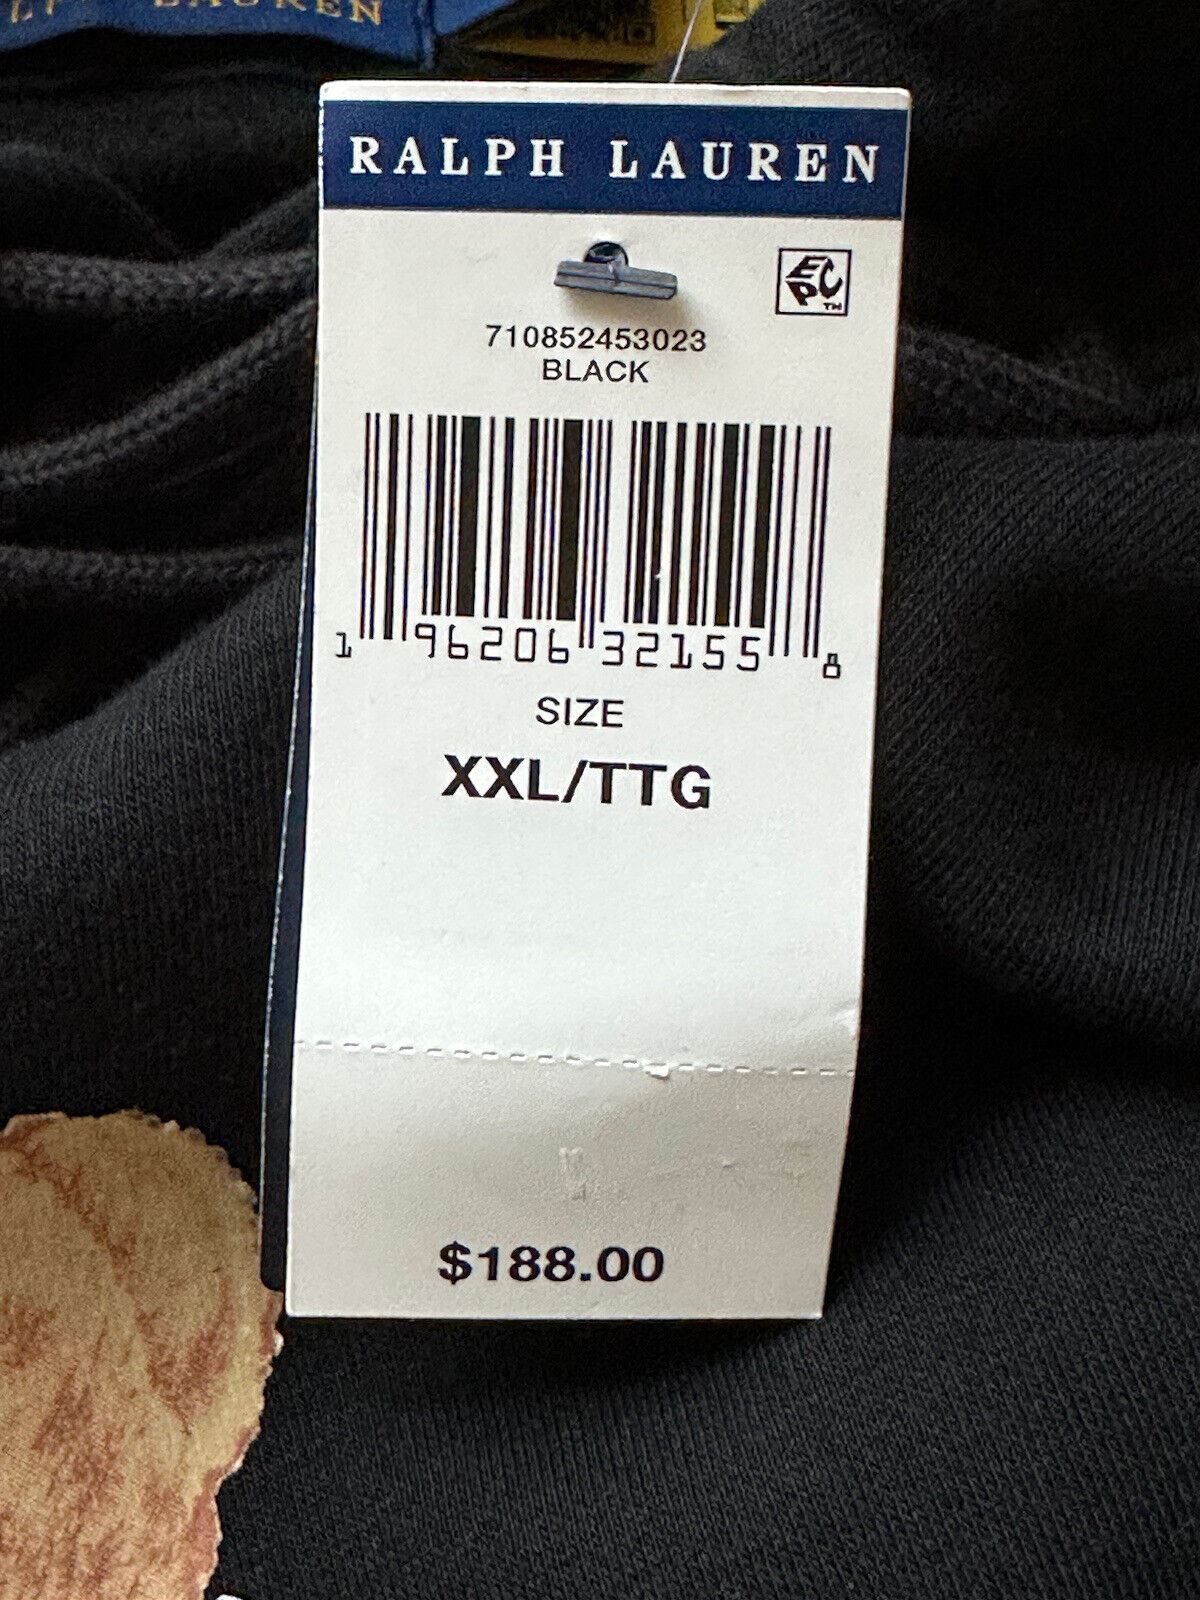 Флисовая толстовка с капюшоном Polo Ralph Lauren Bear, черный размер 2XL, NWT $188 